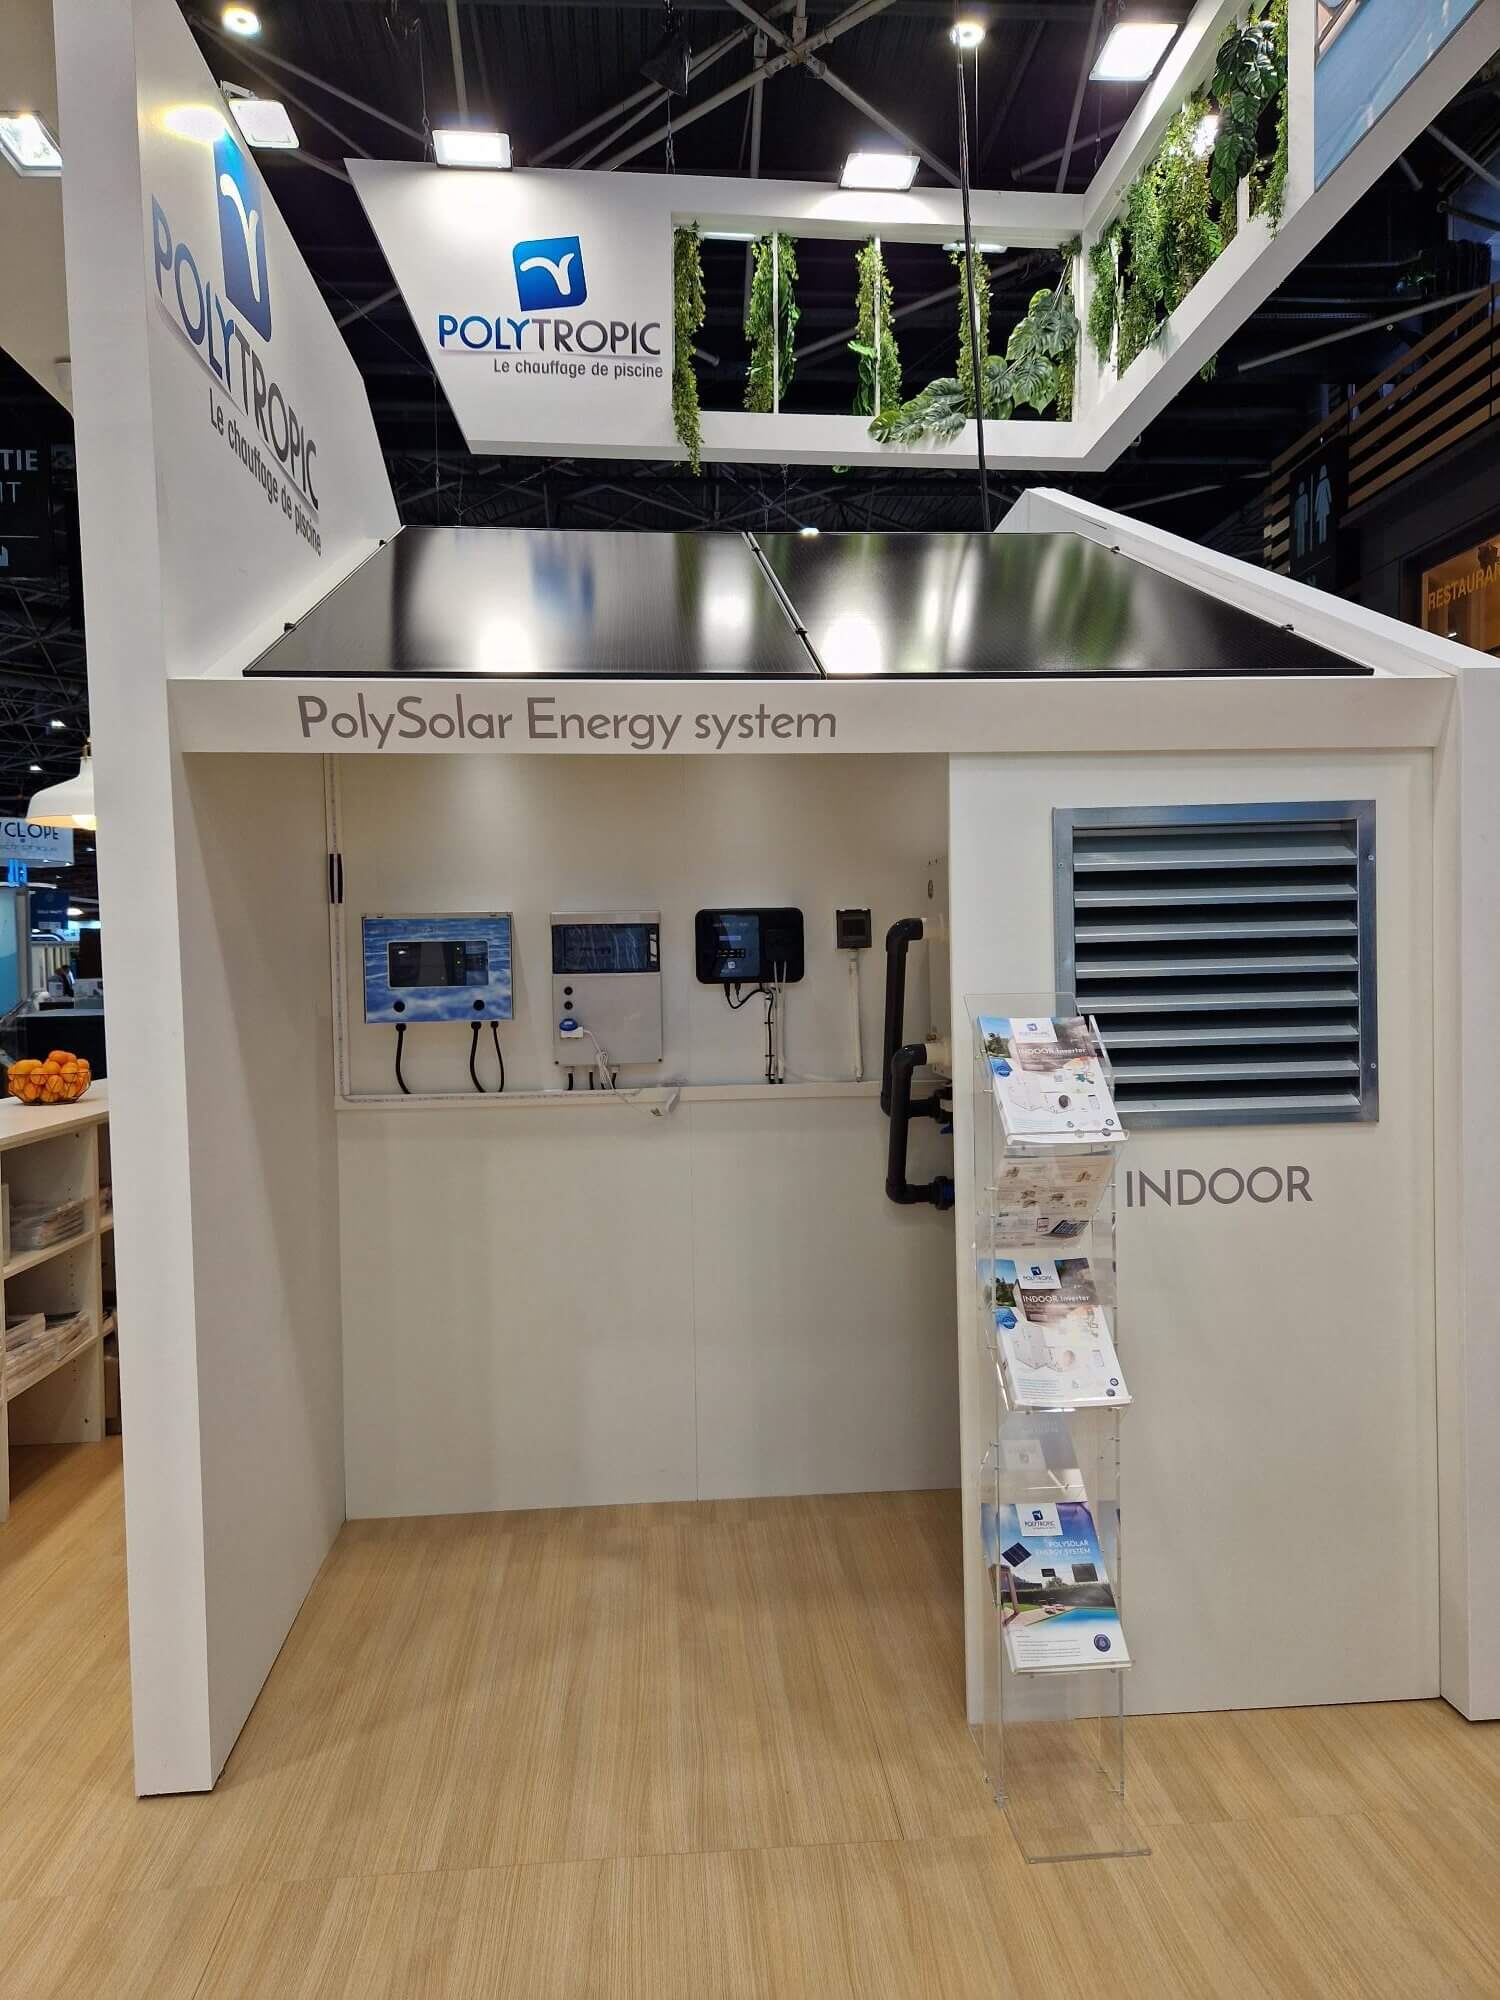 Le PolySolar Energy system sur le stand de Polytropic au salon PISCINE GLOBAL EUROPE